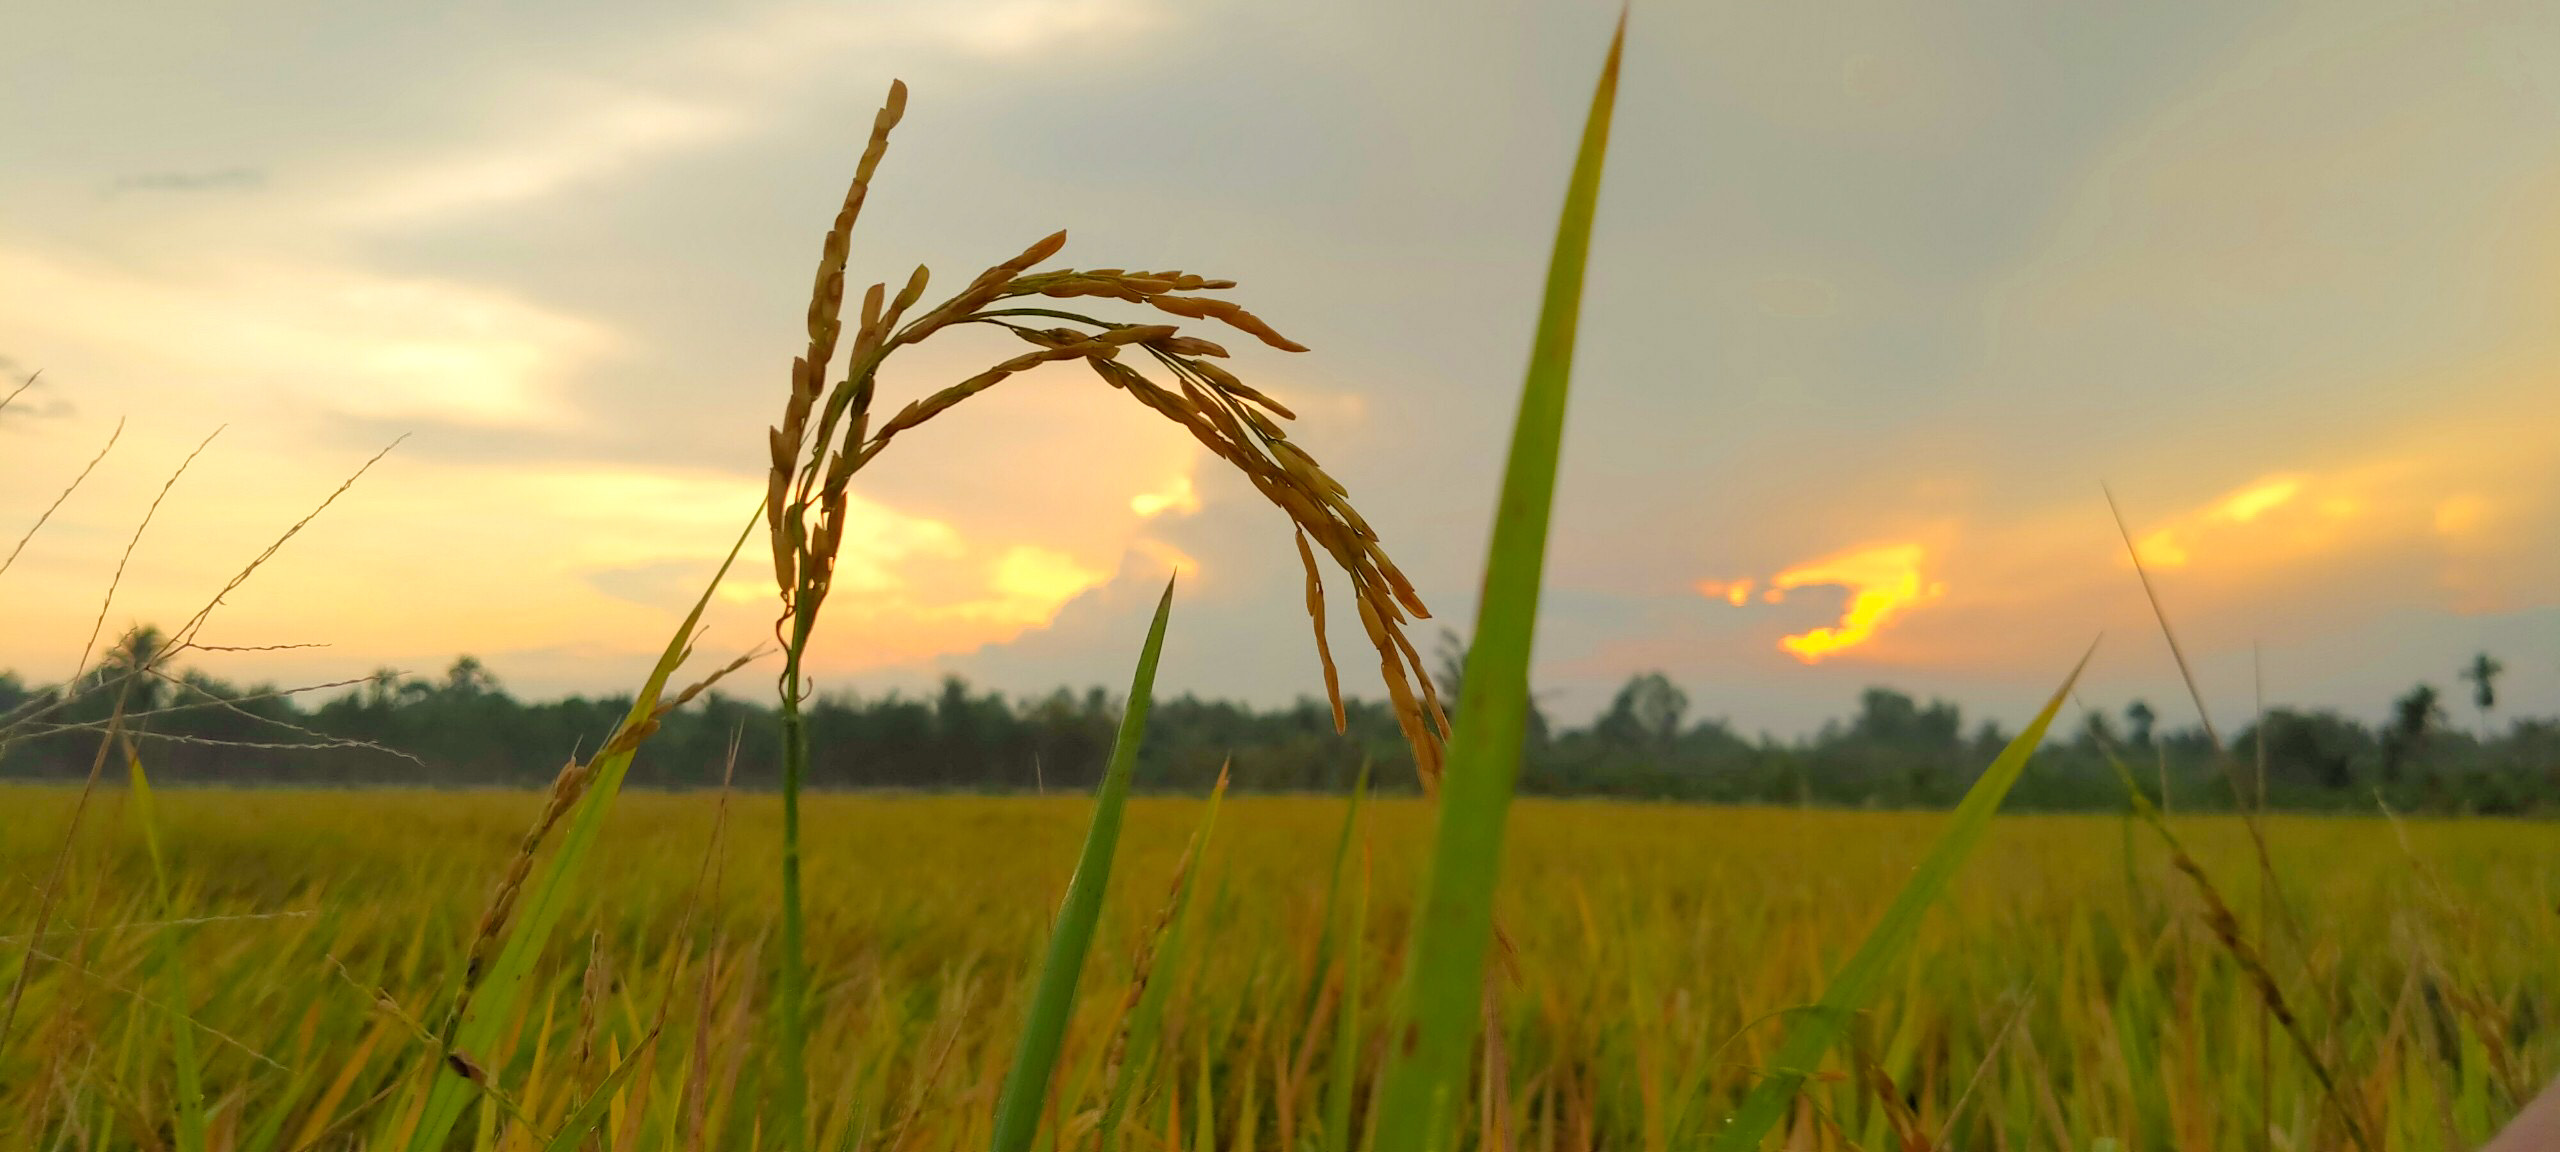 Cánh đồng lúa là món quà tuyệt vời mà thiên nhiên ban tặng cho con người. Khung cảnh rực rỡ màu xanh của những đồng lúa đang chờ đợi để được thu hoạch làm cho trái tim chúng ta đắm say. Hãy nhấp vào hình ảnh để cảm nhận sự đẹp và thanh bình của cánh đồng lúa.